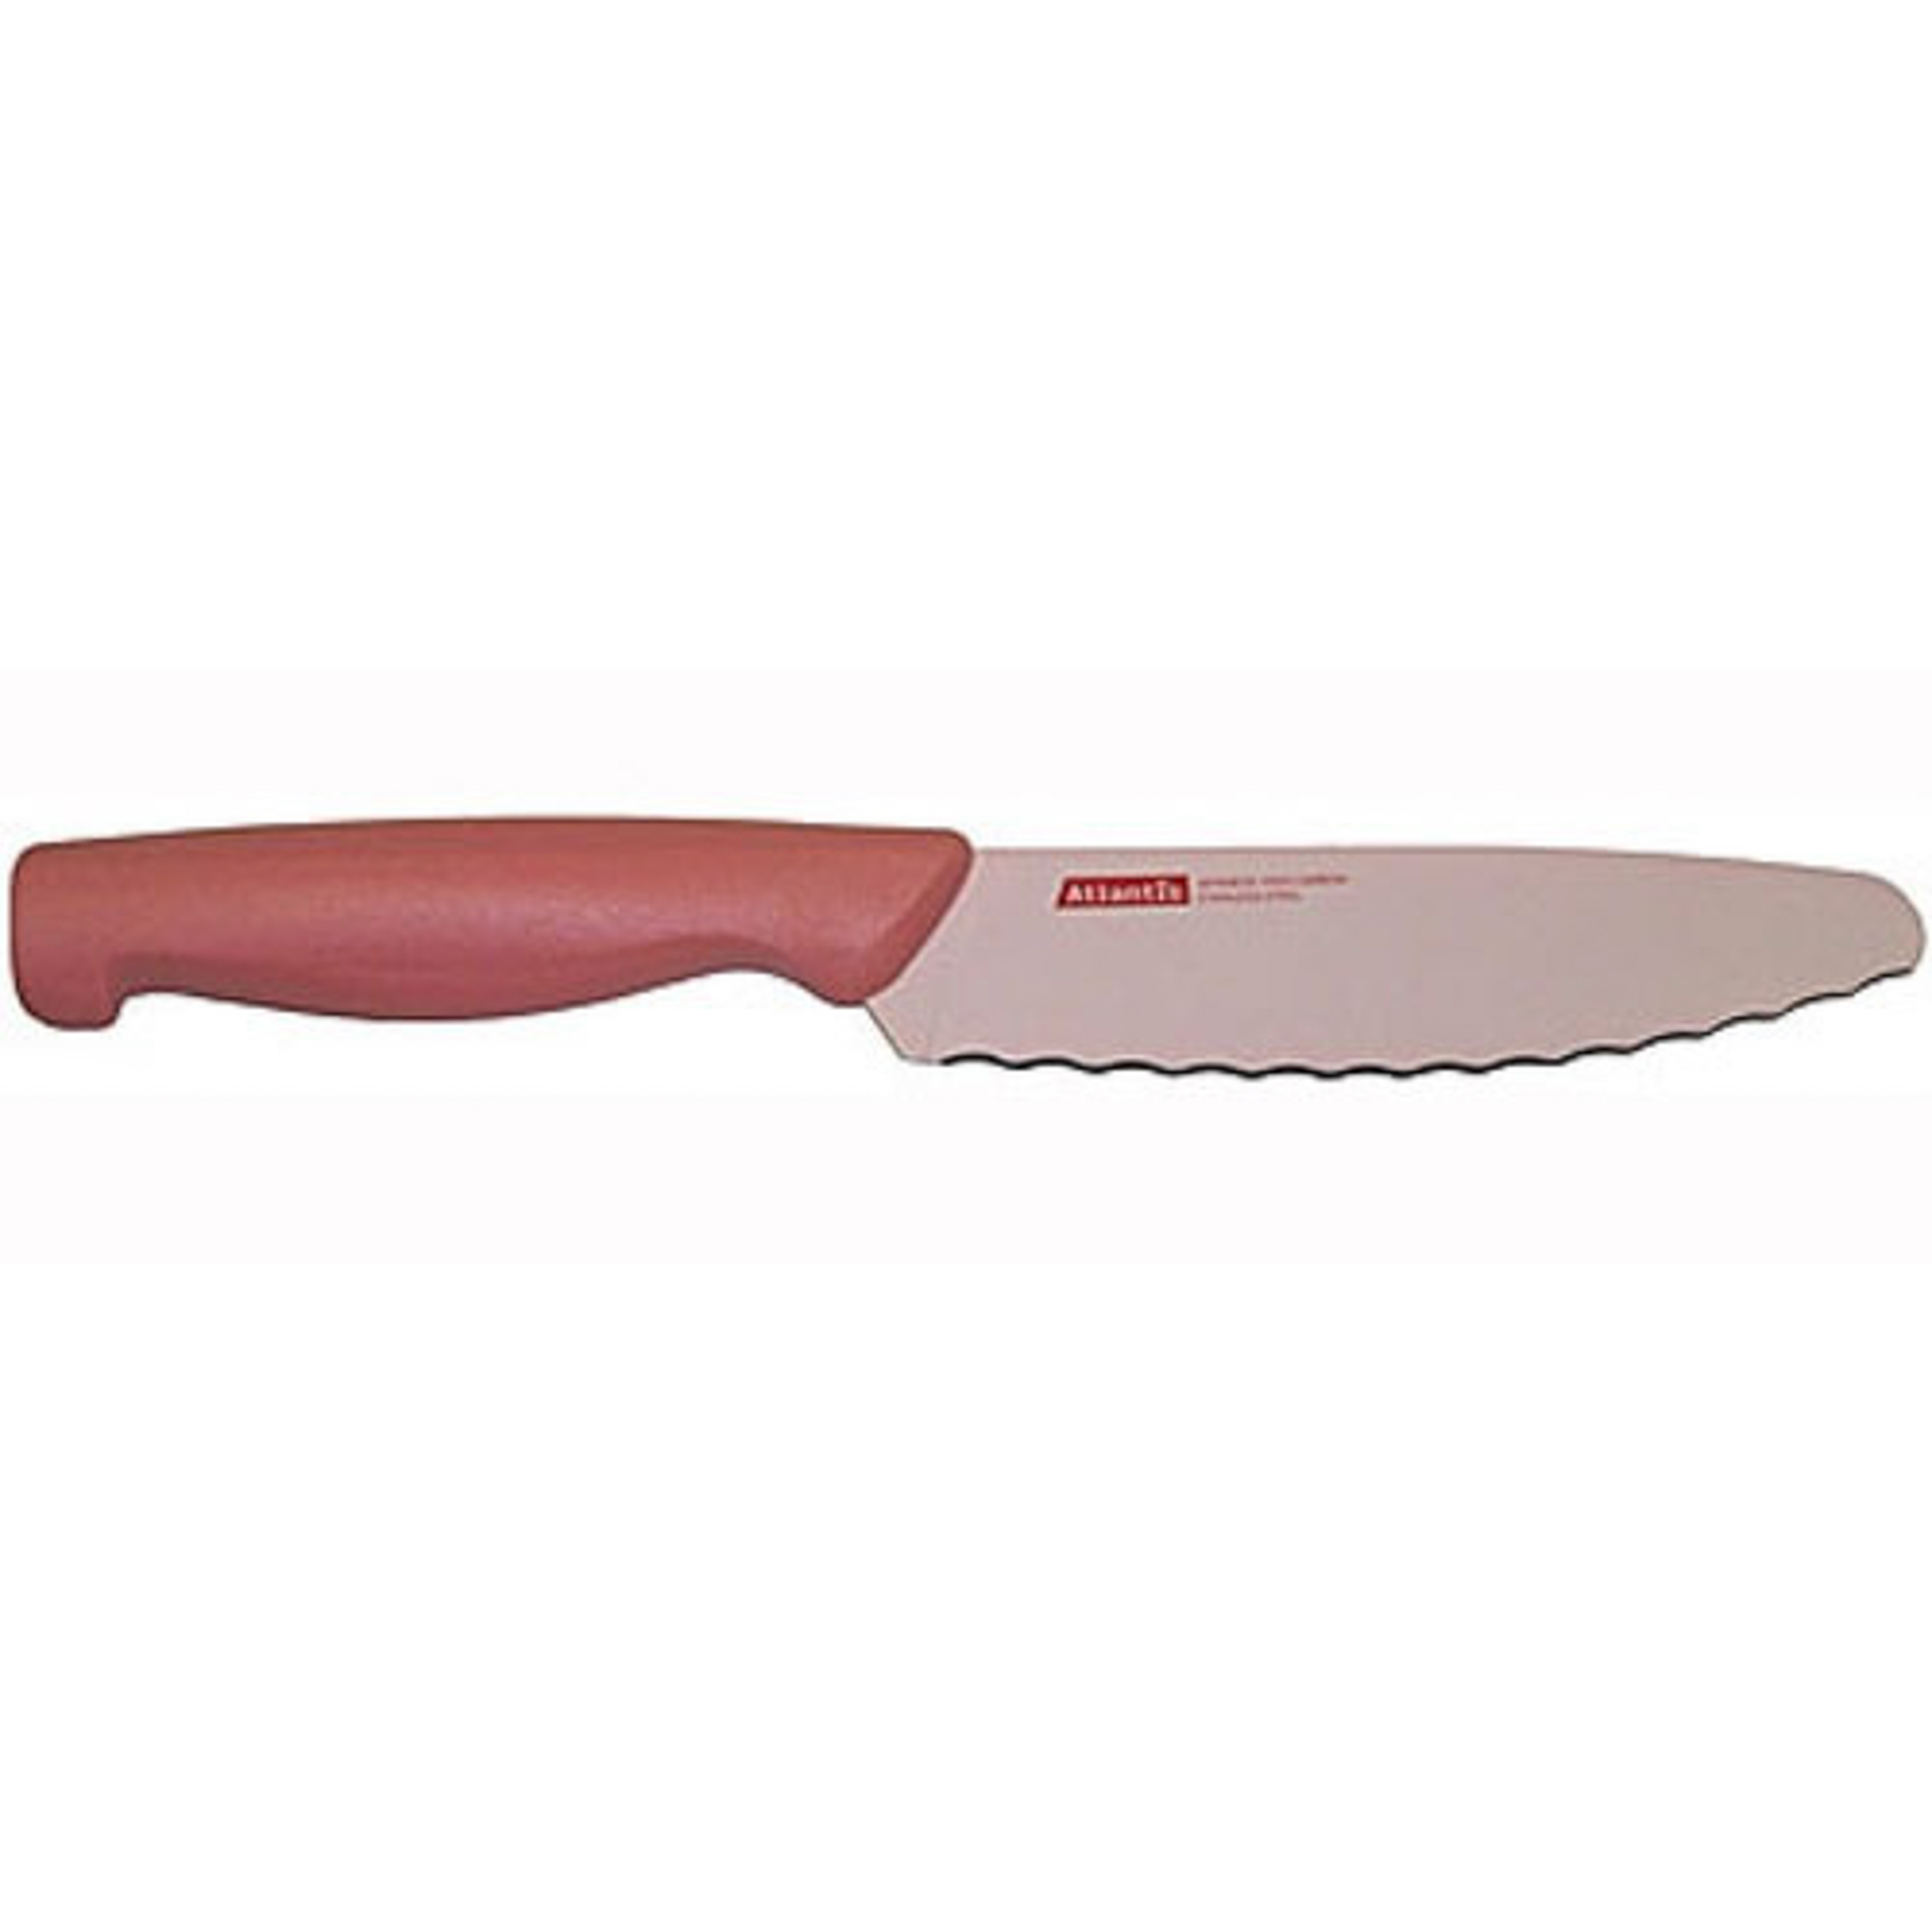 Нож универсальный 15см розовый Atlantis нож atlantis 15см 24306 sk